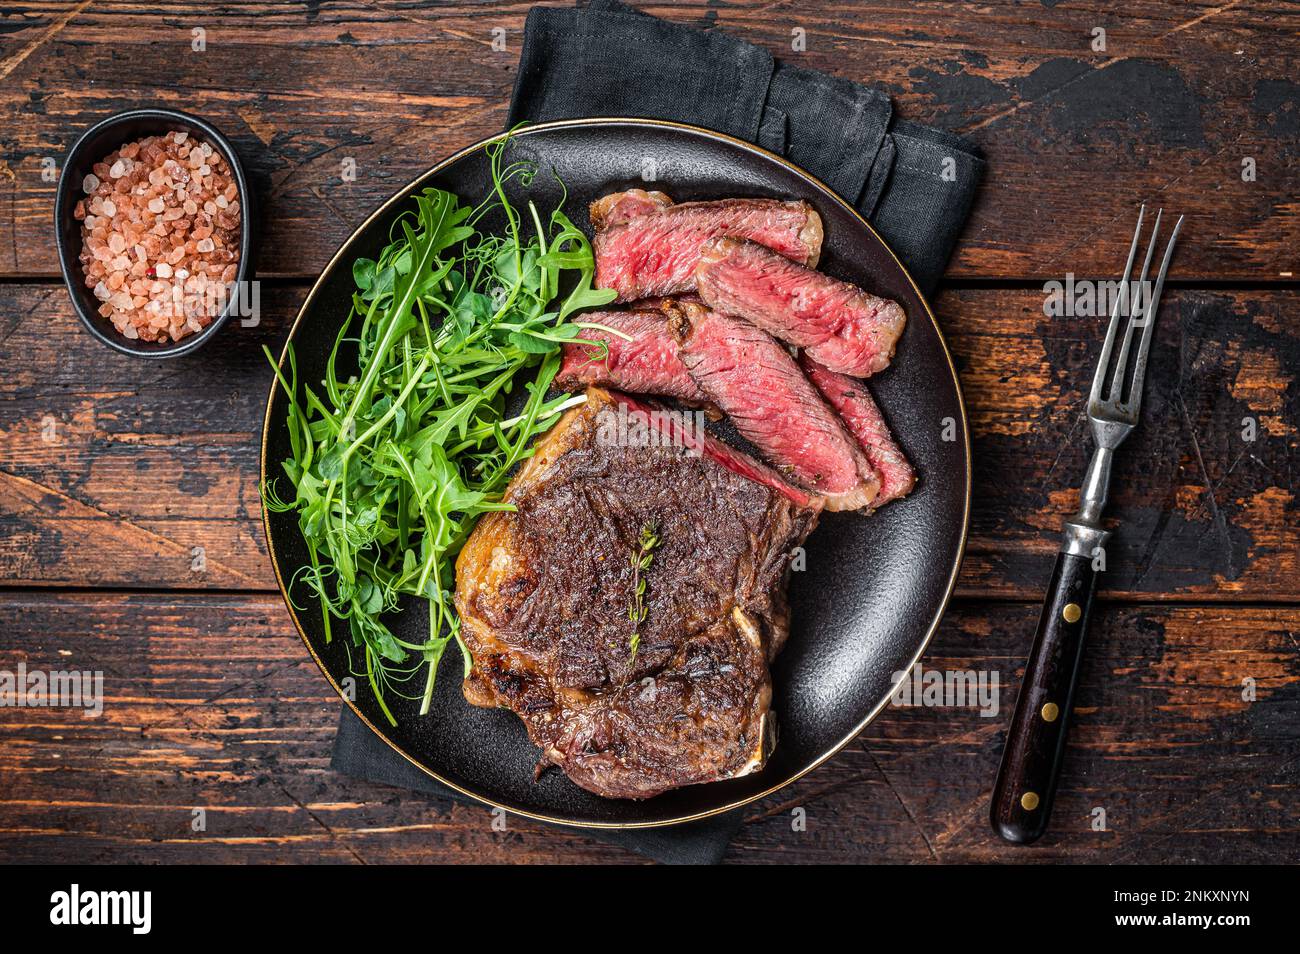 Steak de viande de bœuf Wagyu New York grillé au barbecue ou steak de stripline dans une assiette avec salade. Arrière-plan en bois. Vue de dessus. Banque D'Images